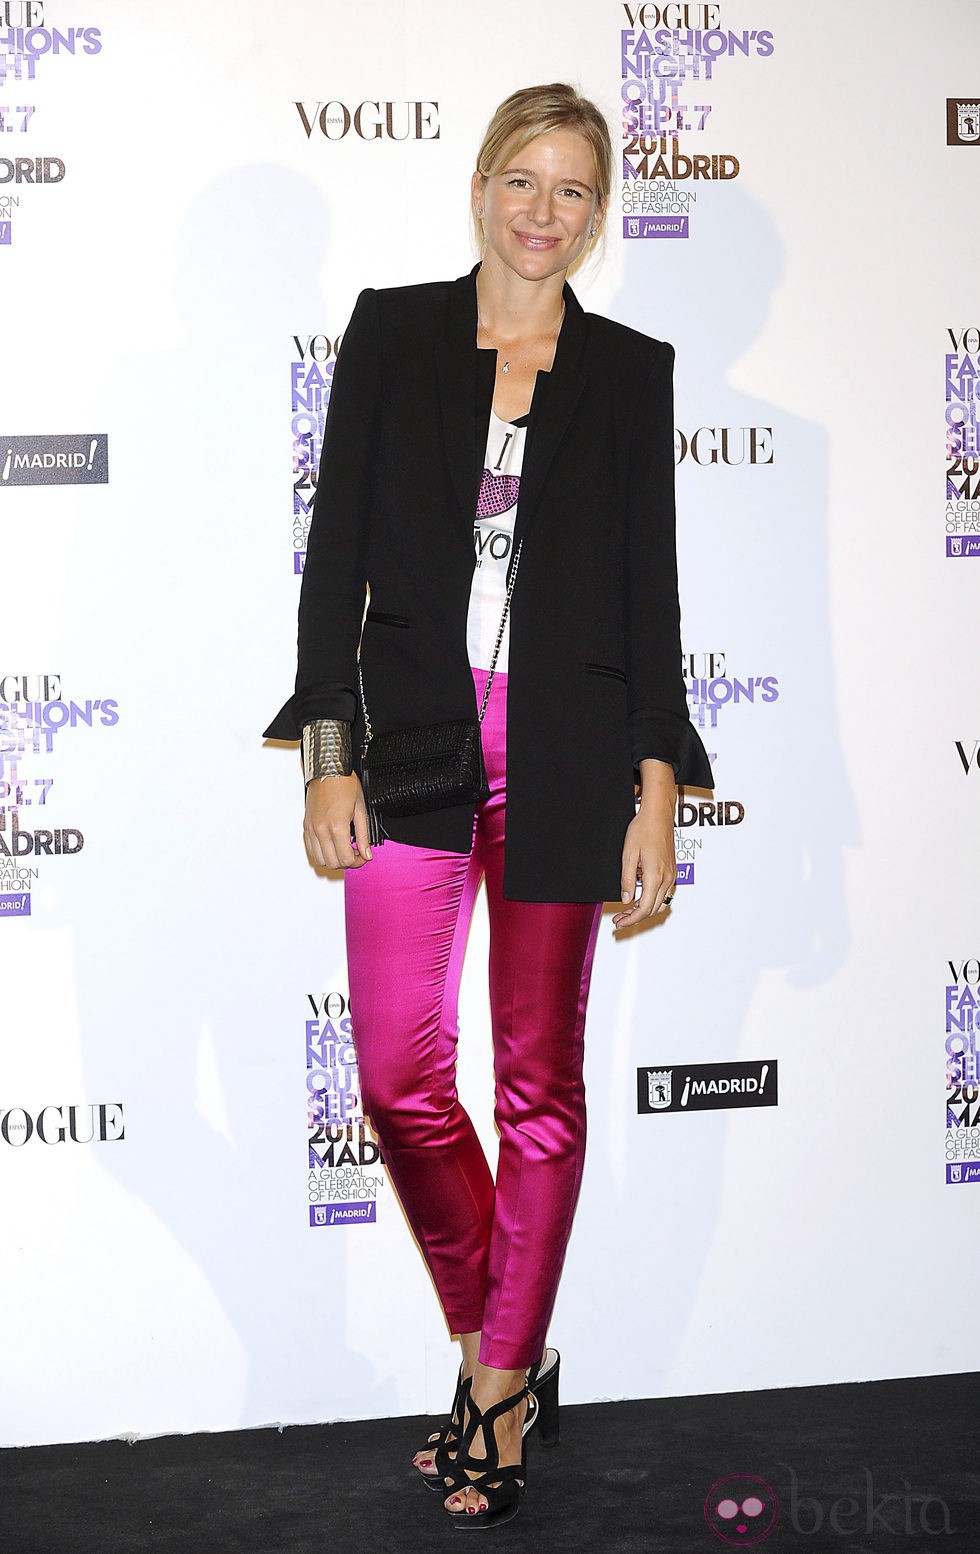 María León con pantalón rosa en la Vogue Fashion's Night Out 2011